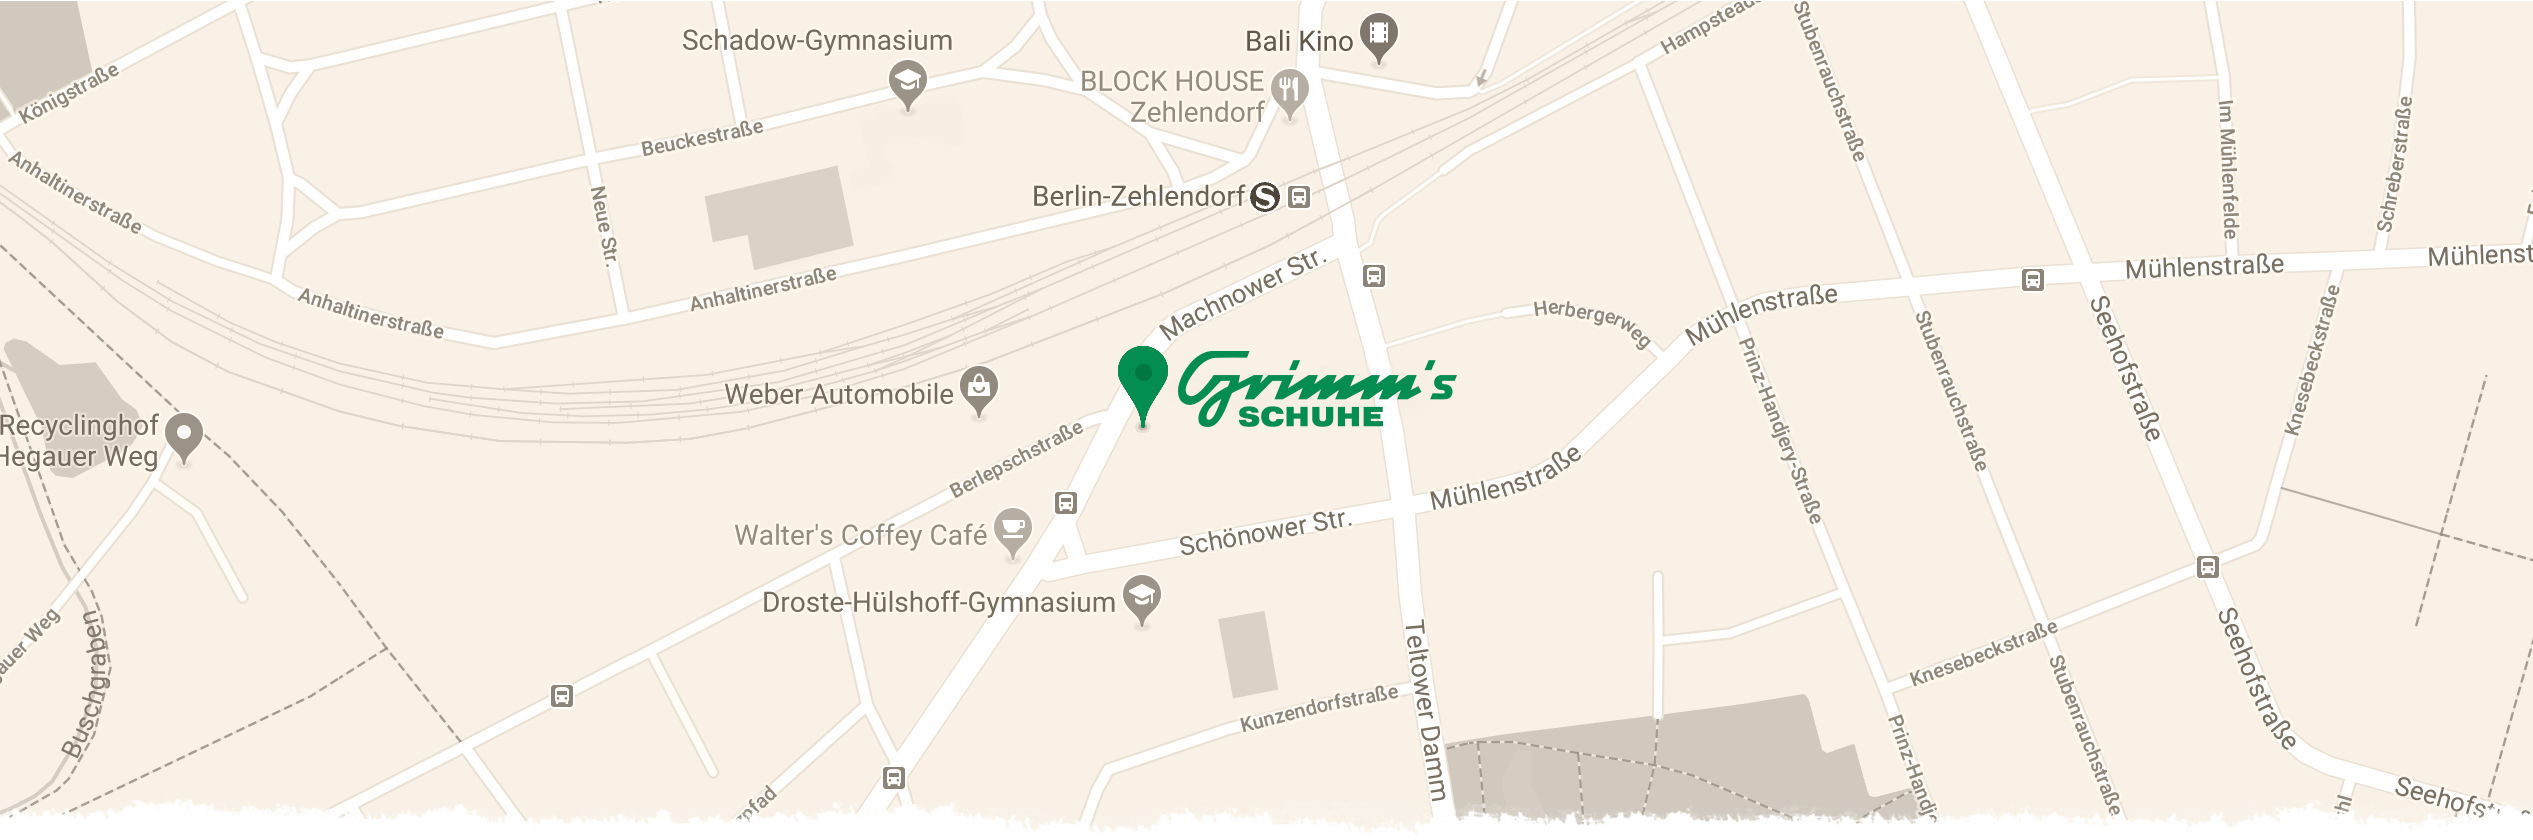 Grimms Schuhe Berlin Standort Karte